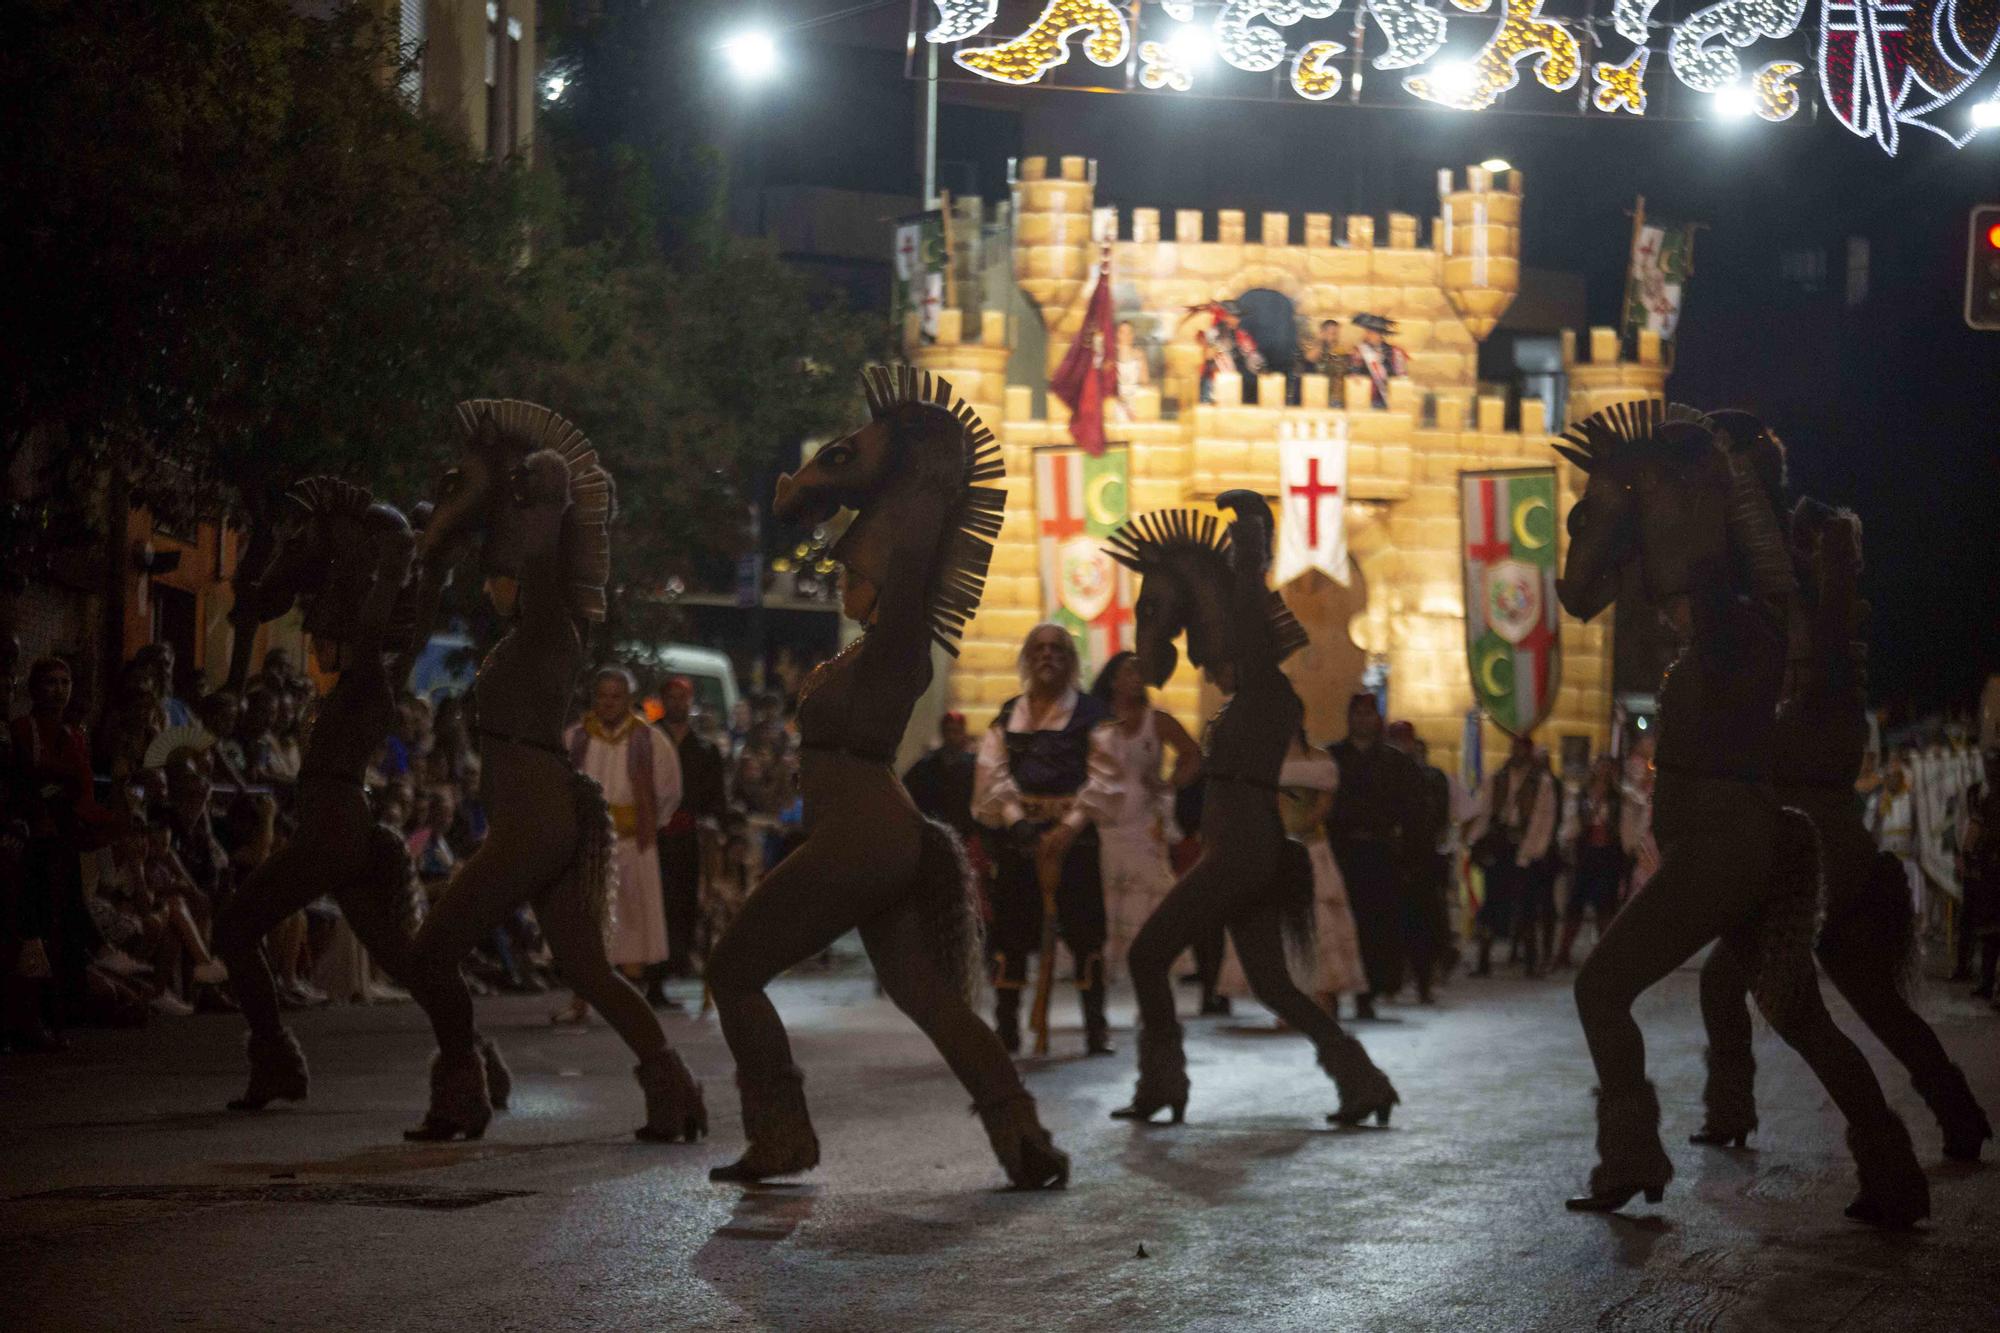 Las fiestas de Moros y Cristianos de Altozano, en Alicante, viven sus fechas principales desde esta noche con el desfile infantil y la embajada